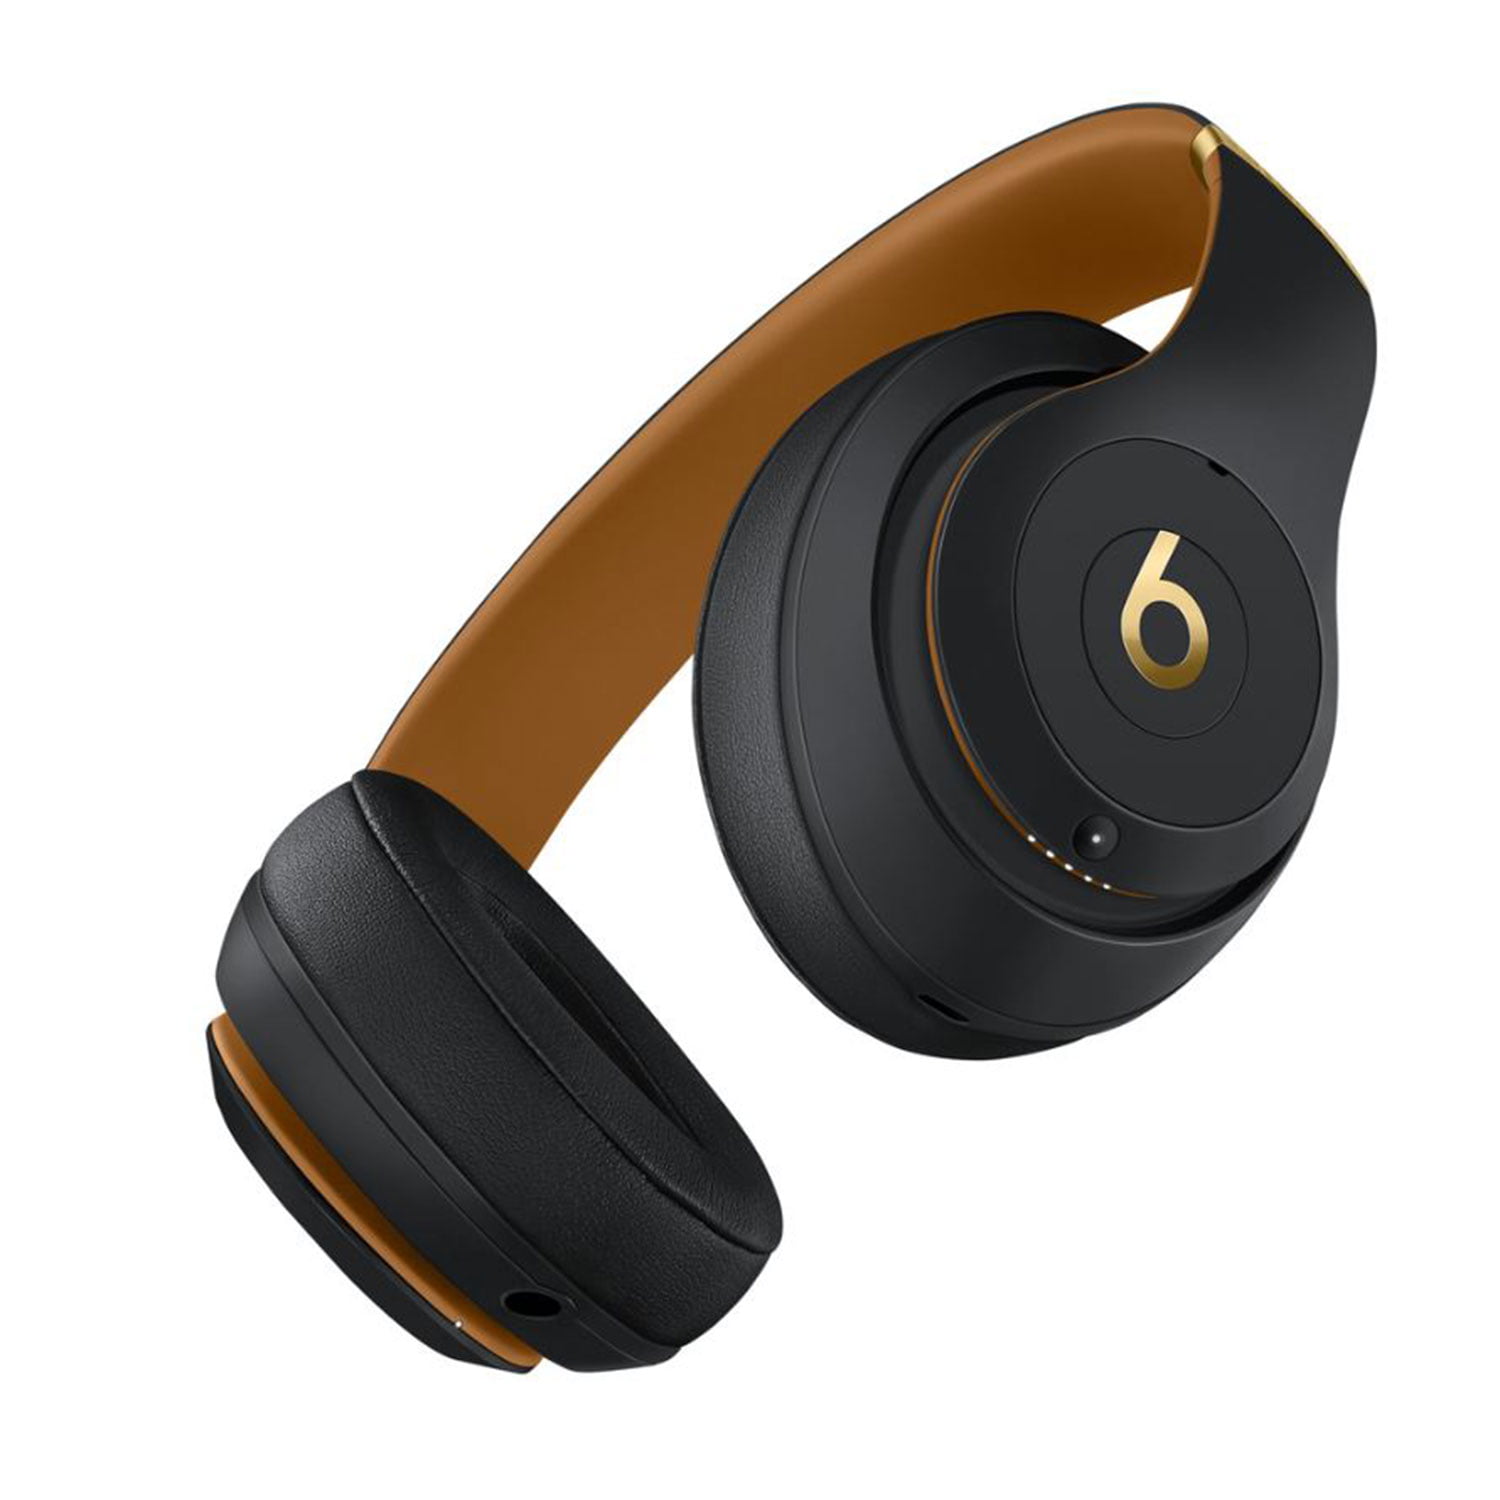 オーディオ機器 ヘッドフォン Beats Studio3 Wireless Over-Ear Noise Cancelling Bluetooth 